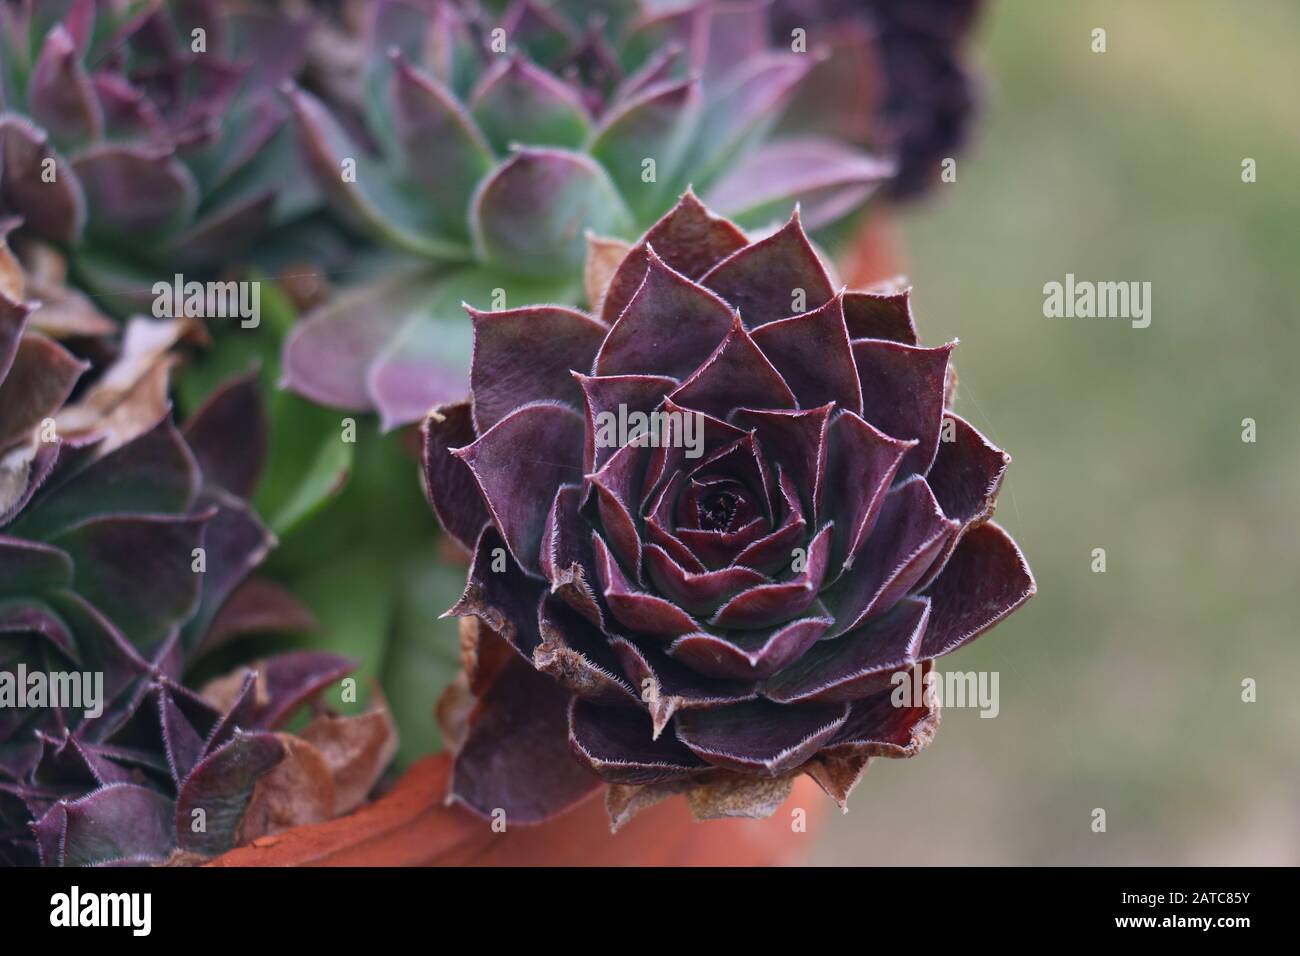 Sempervivum saftige rotviolette Rosette, die sich von spitzen Blättern klammert, die artigochartigen Veränderungen der Farbe in der Saison, die oft als "violette Königin" Purpurschönheit bezeichnet wird Stockfoto